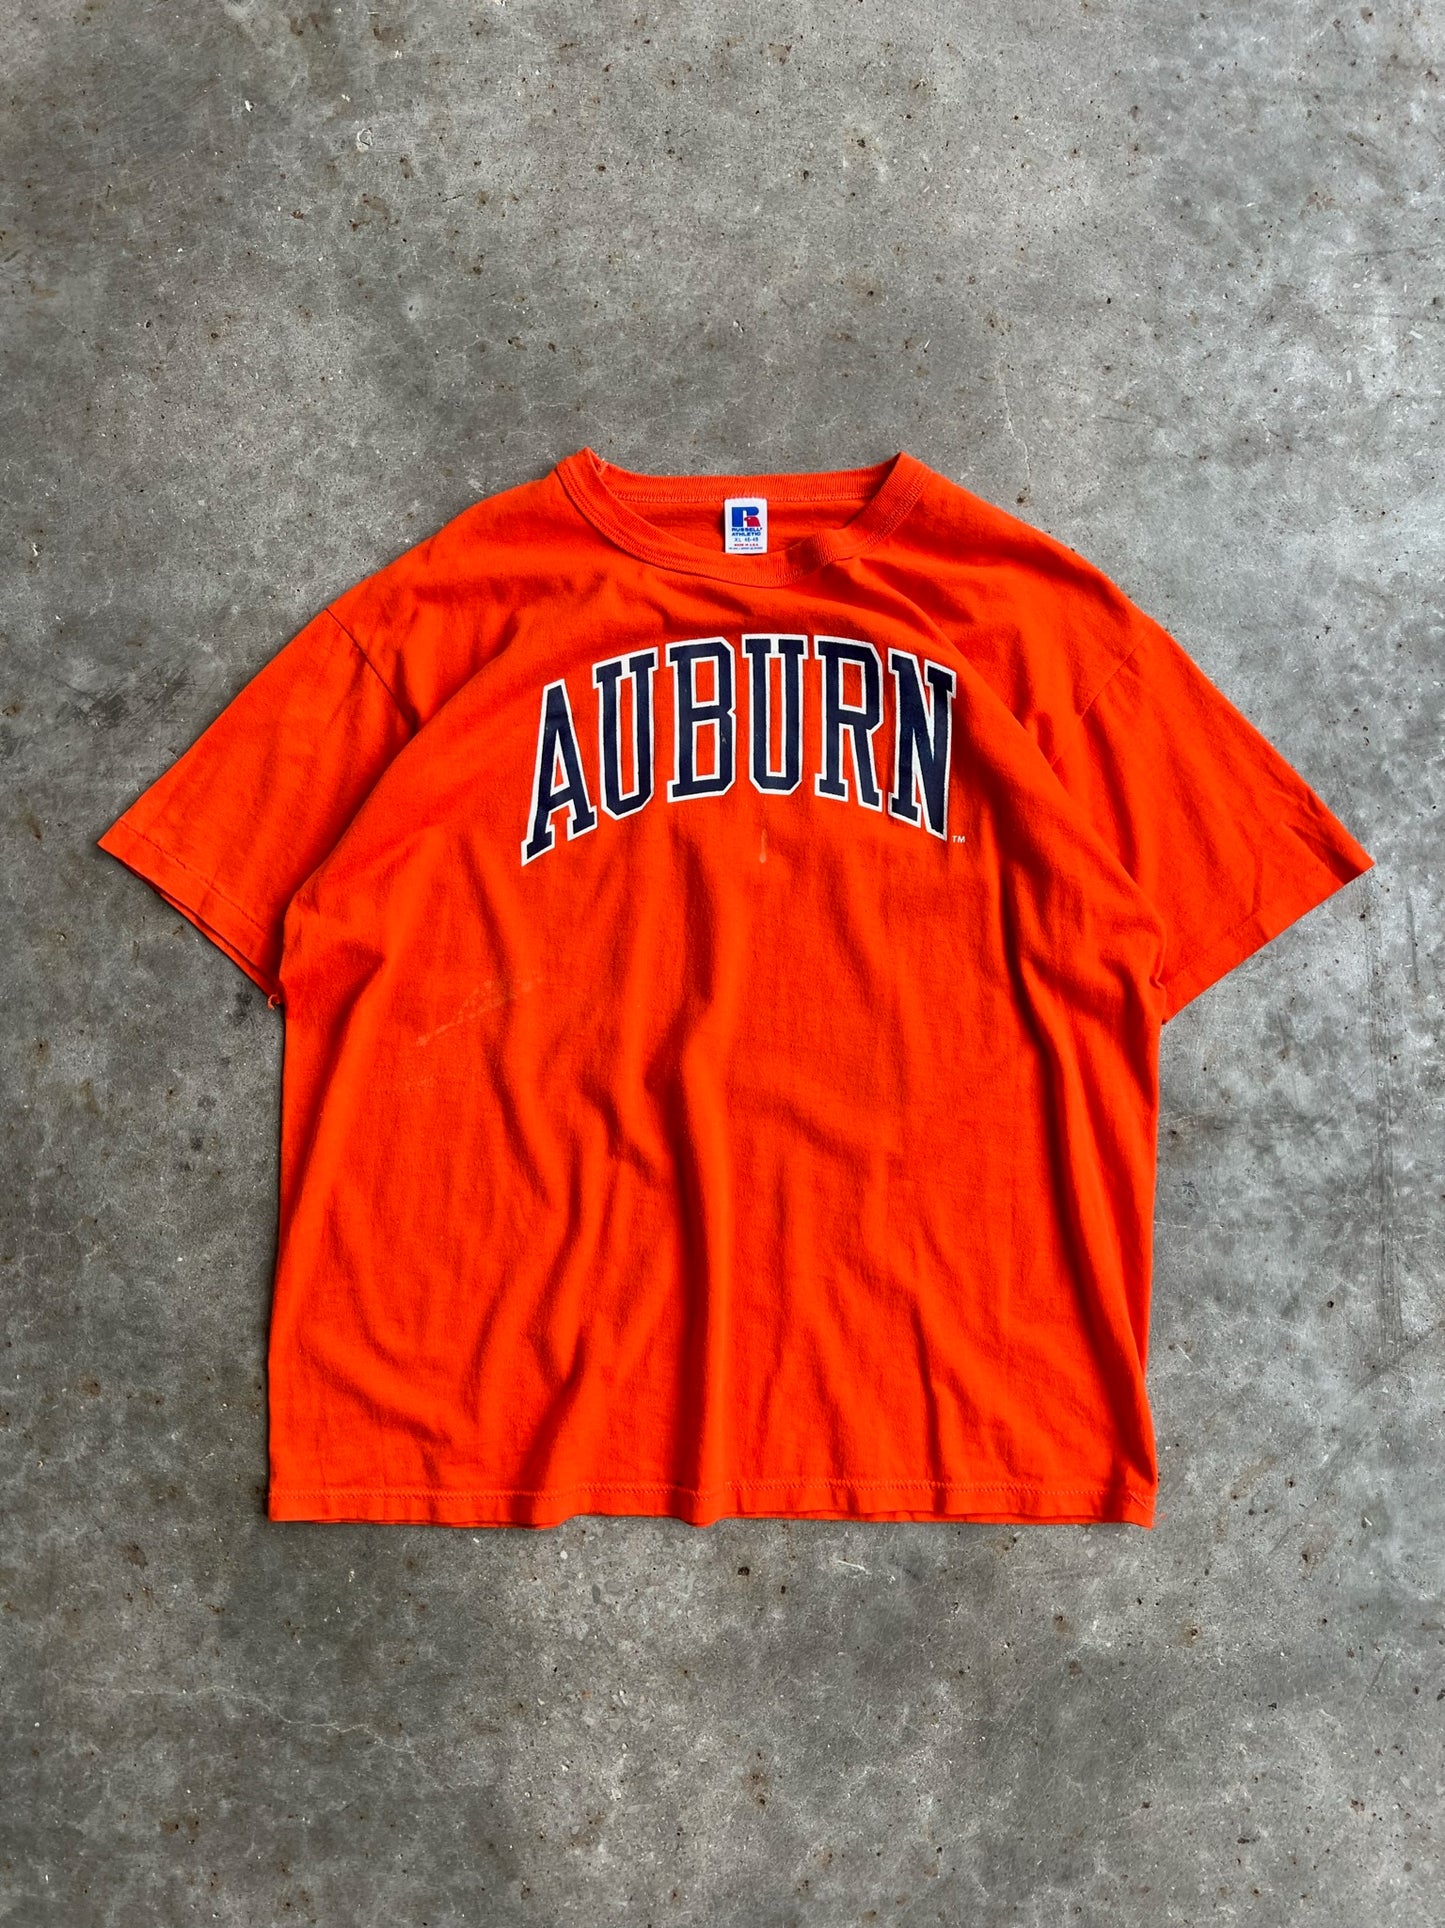 Vintage Auburn University Shirt - XL